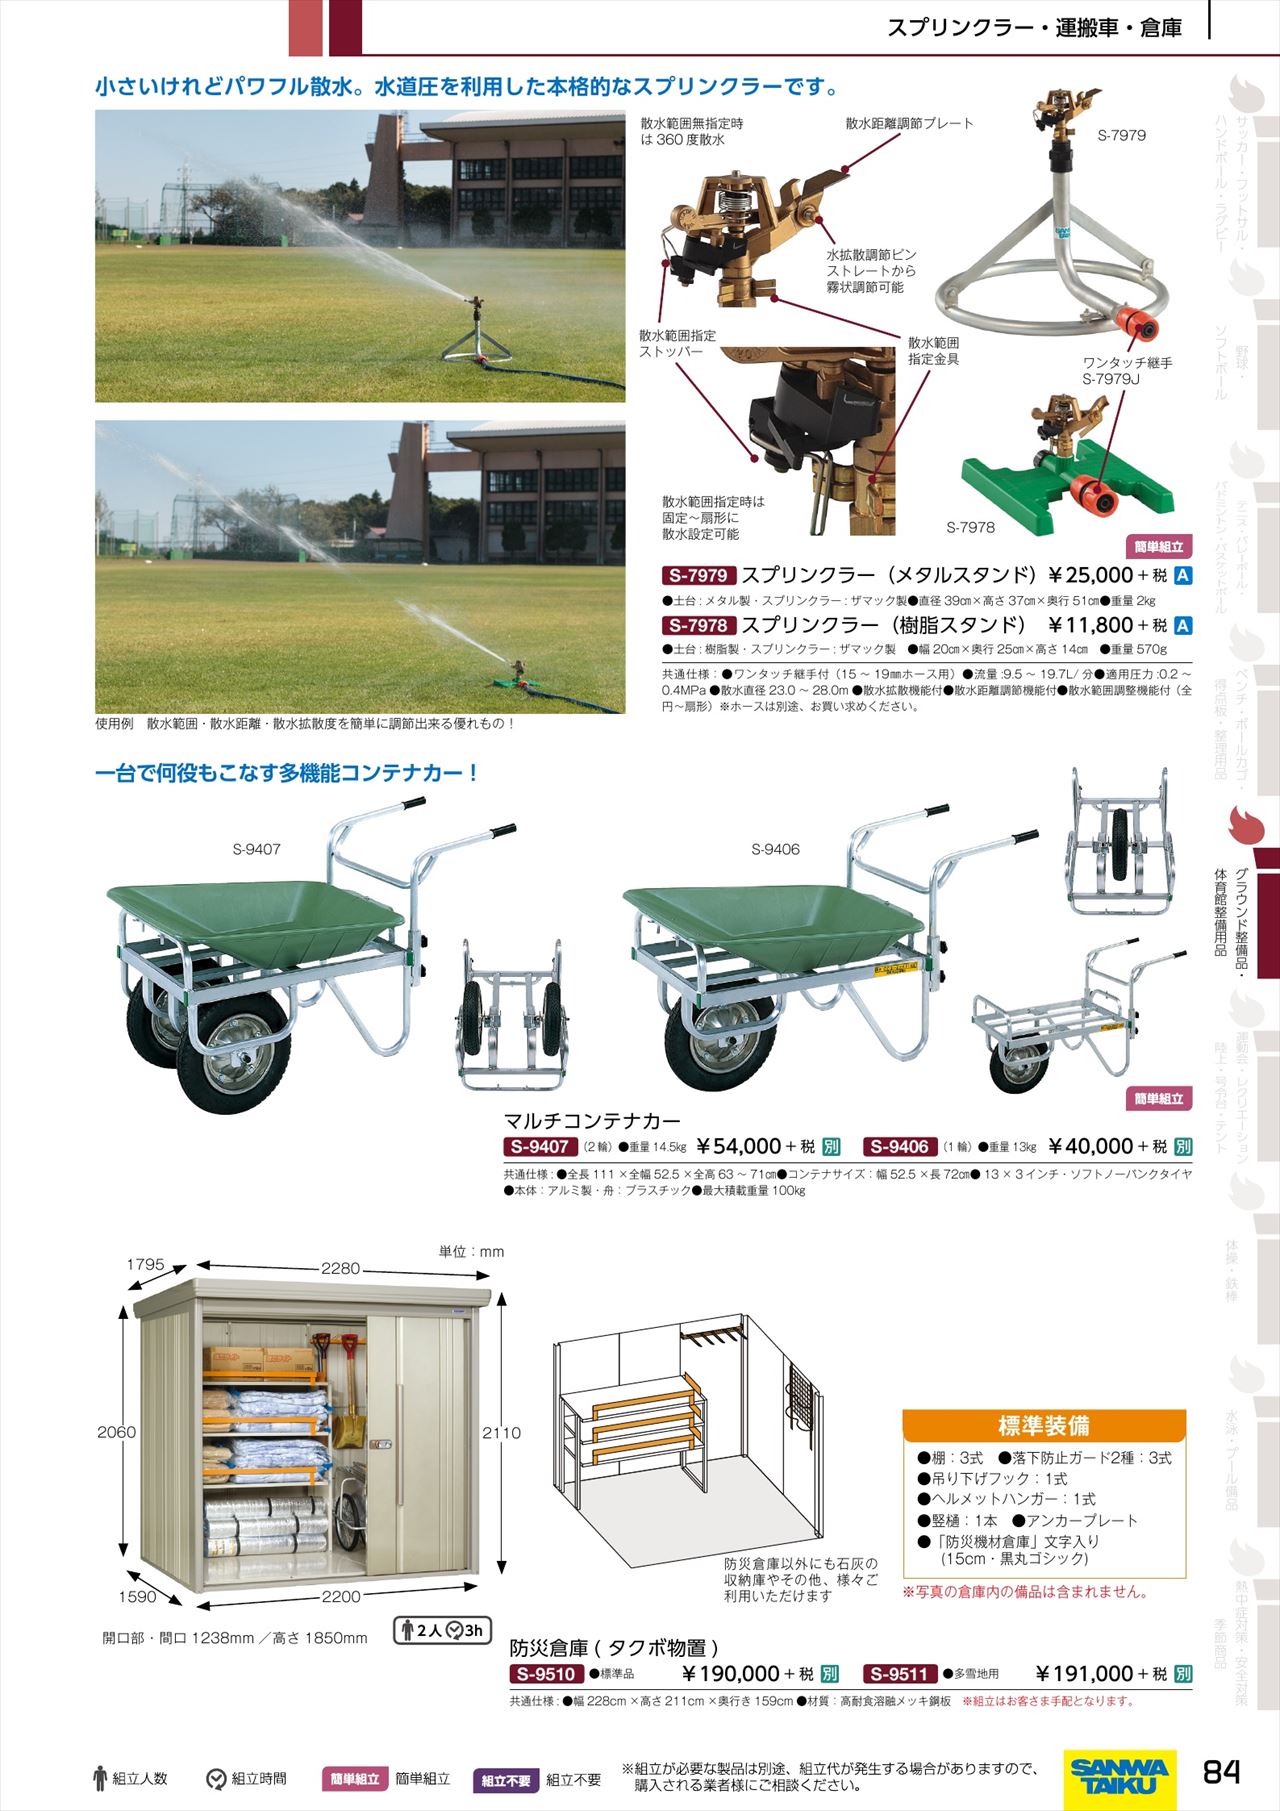 防災倉庫は 三和体育カタログ の ページ84 に掲載されています スポーツメーカーカタログ 目次ページ